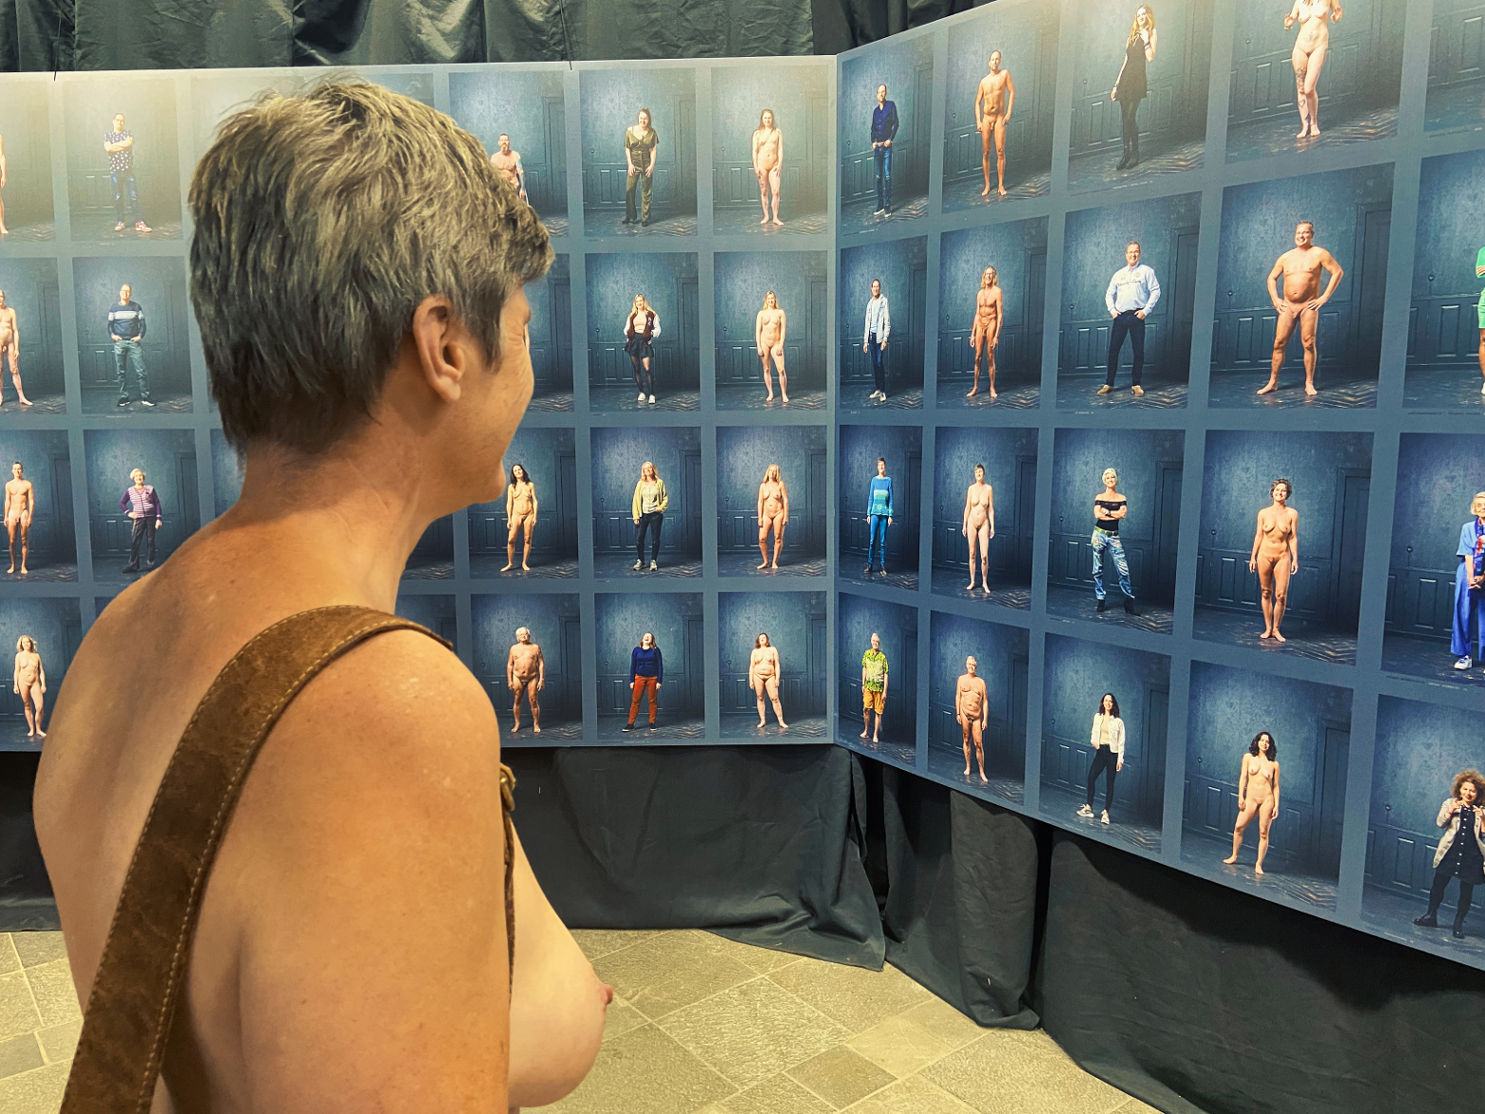 De tentoonstelling ' Naked The Hague' kon je gewoon bloot bezoeken. Heel gewoon . Foto : Jan Vranken